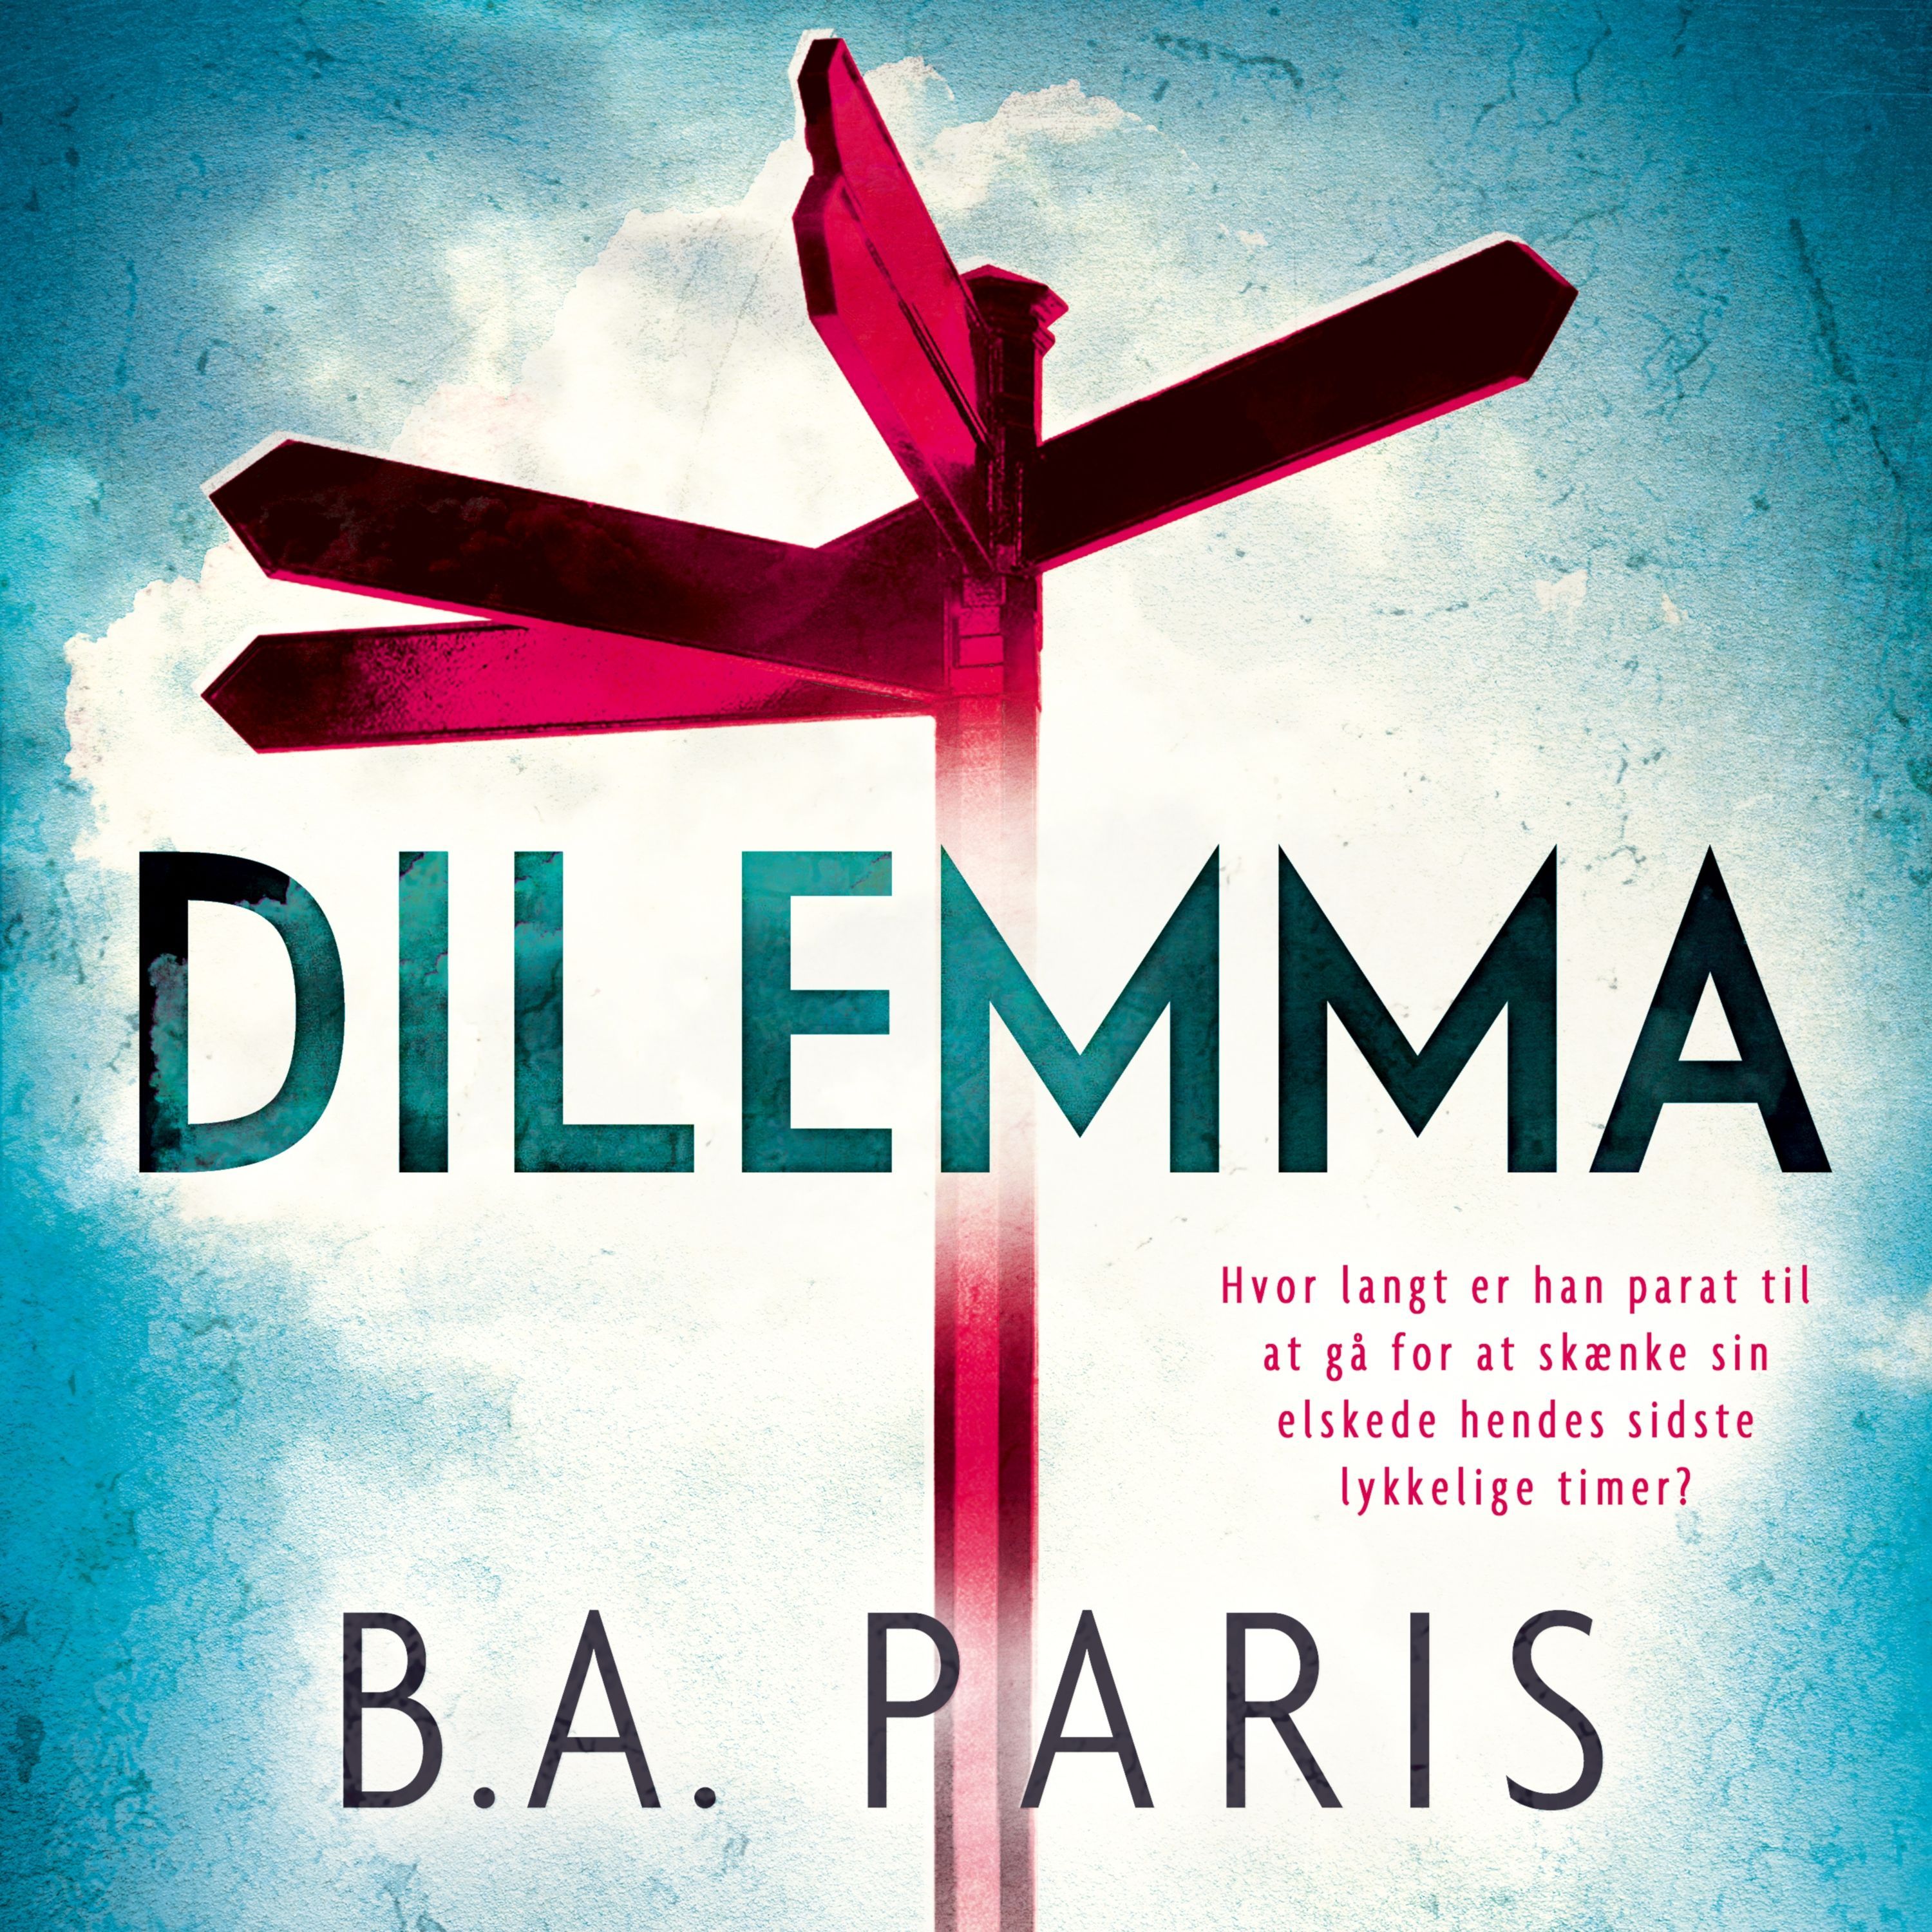 Dilemma, lydbog af B.A. Paris